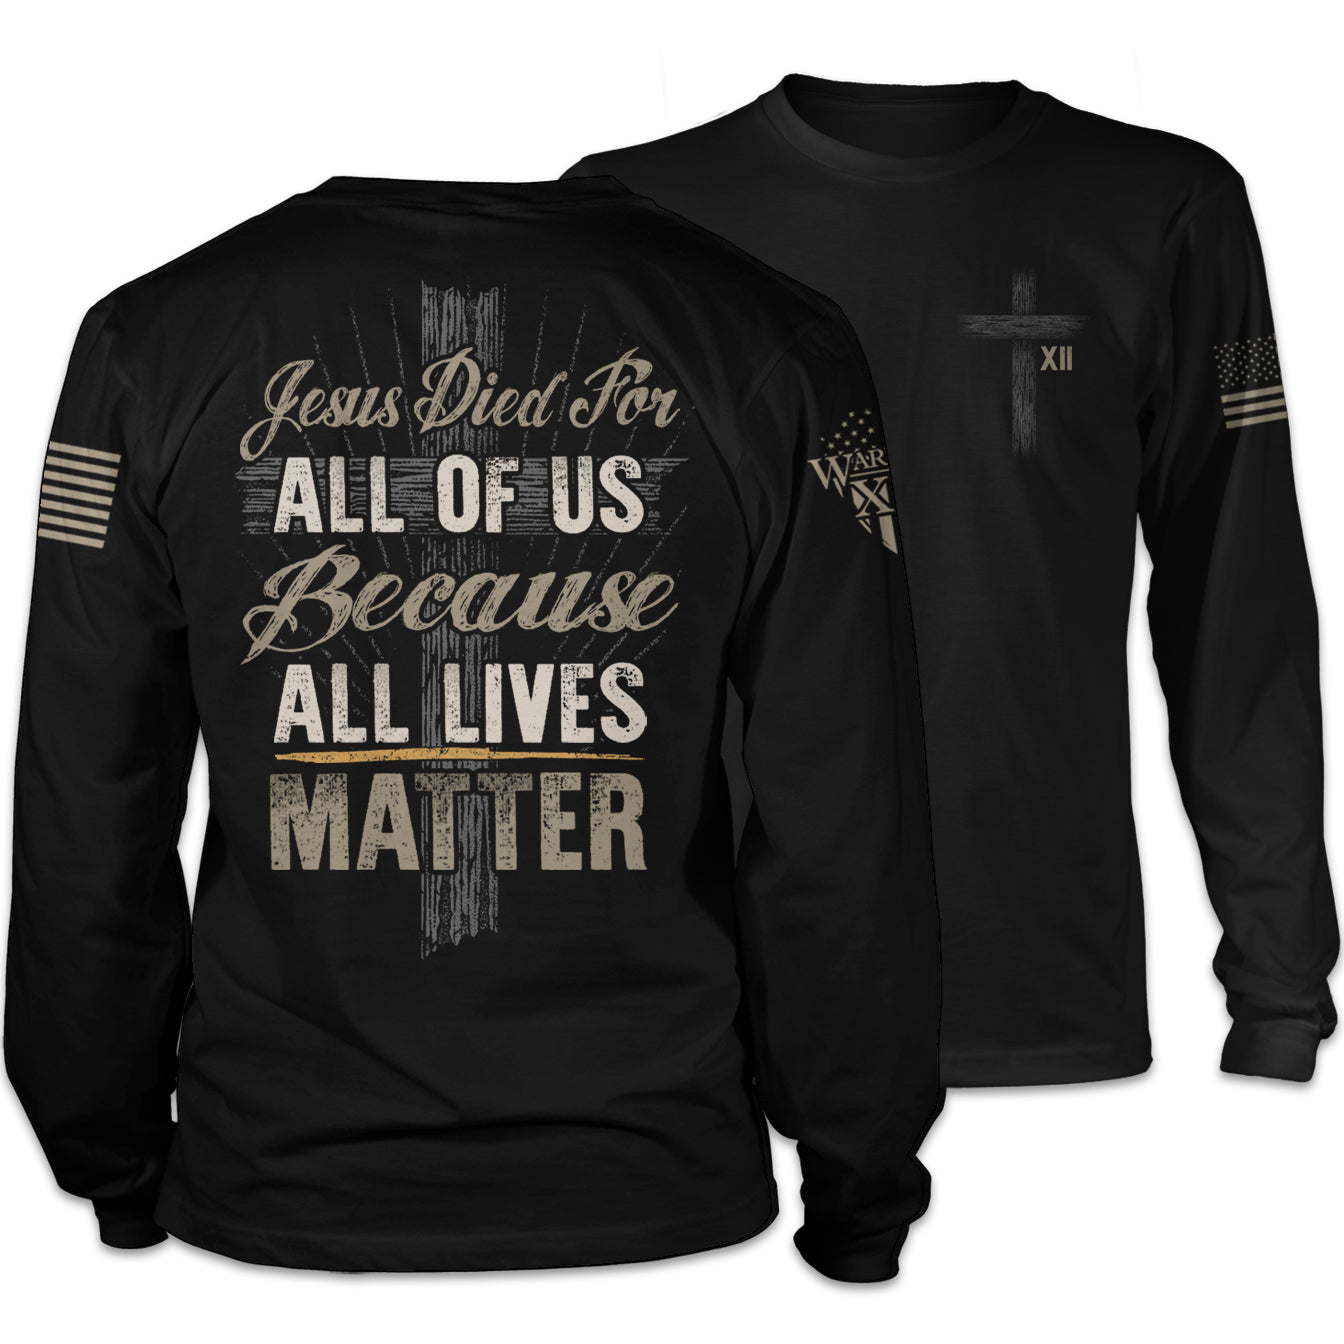 All Lives Matter - Long Sleeve